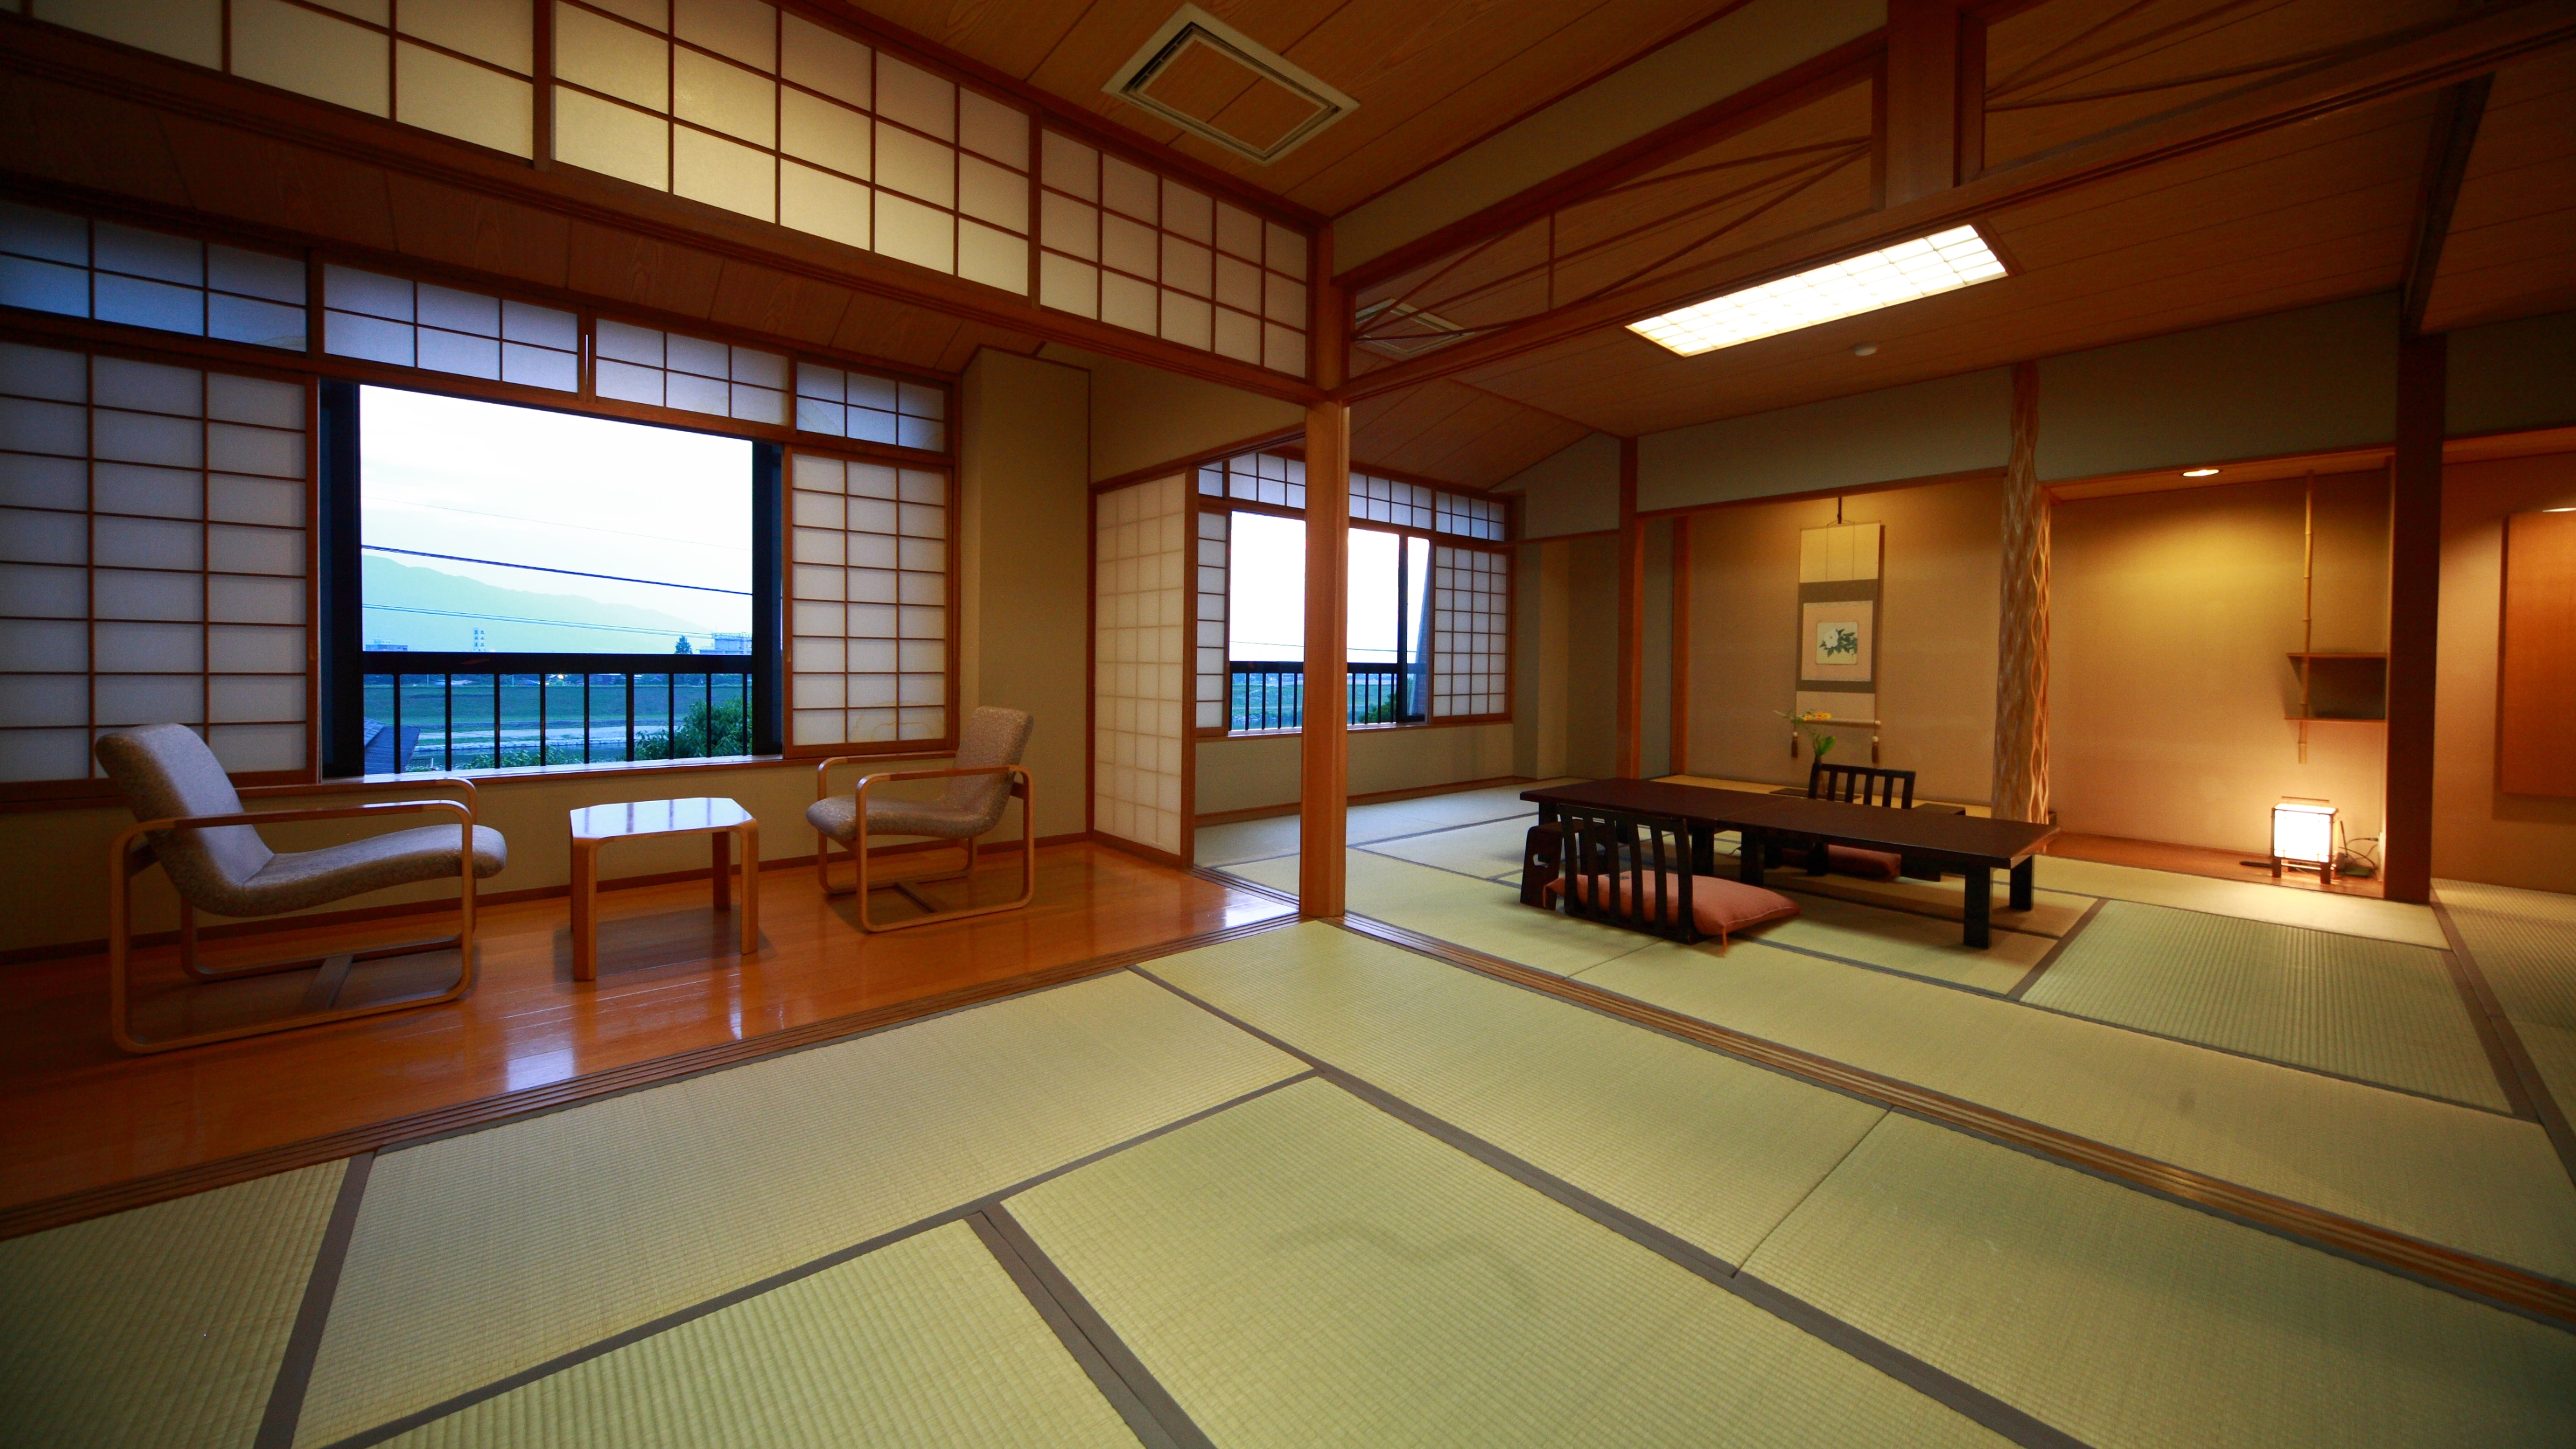 Japanese-style room 2 rooms (12 tatami mats + 8 tatami mats)